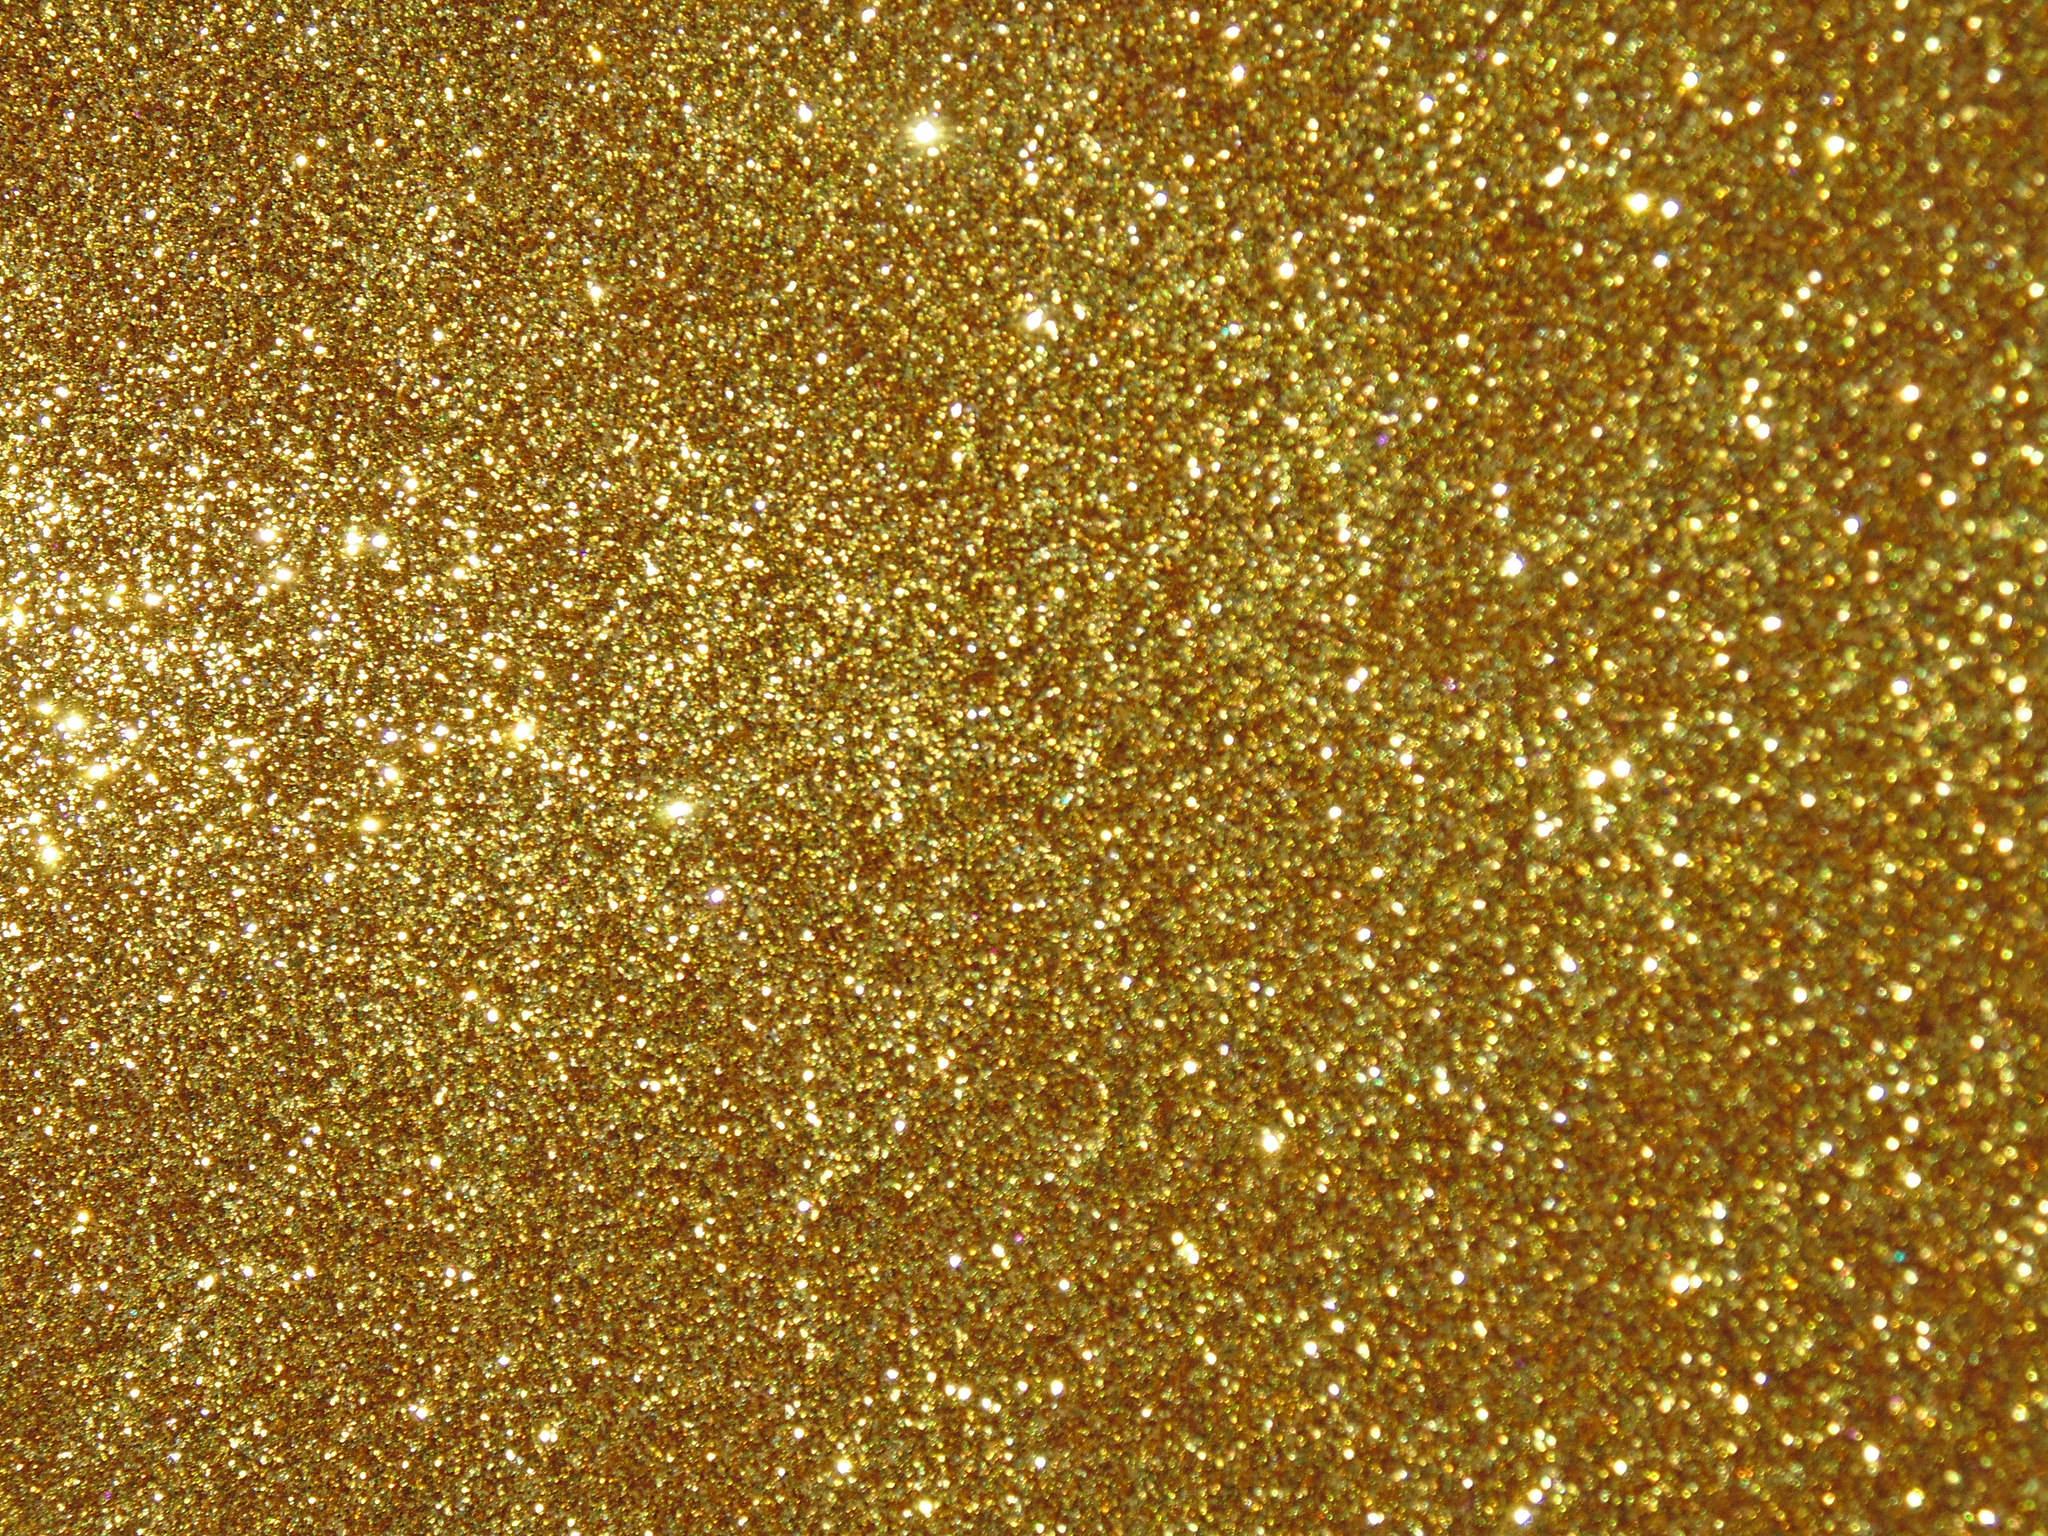 Golden Glitter image PPT Backgrounds